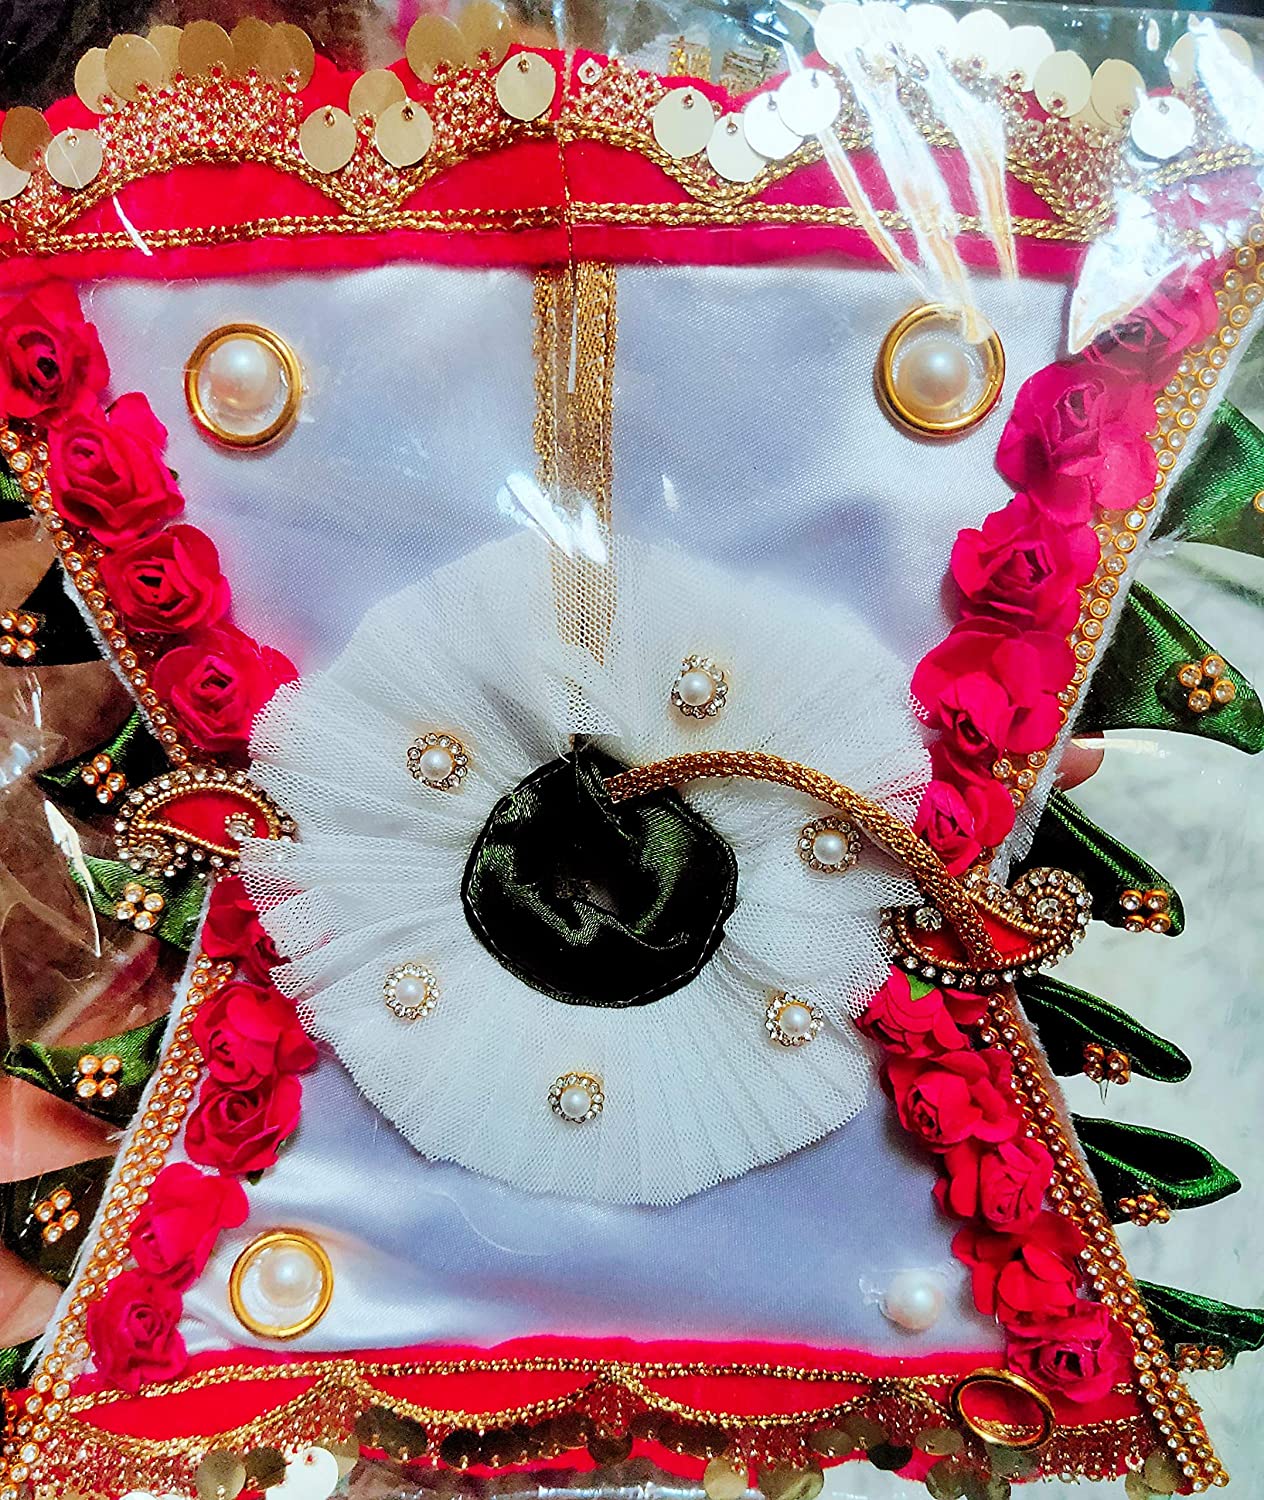 Cotton Fancy Laddu Gopal Dress Set, Size: 0-6 Number at Rs 250/set in  Dehradun